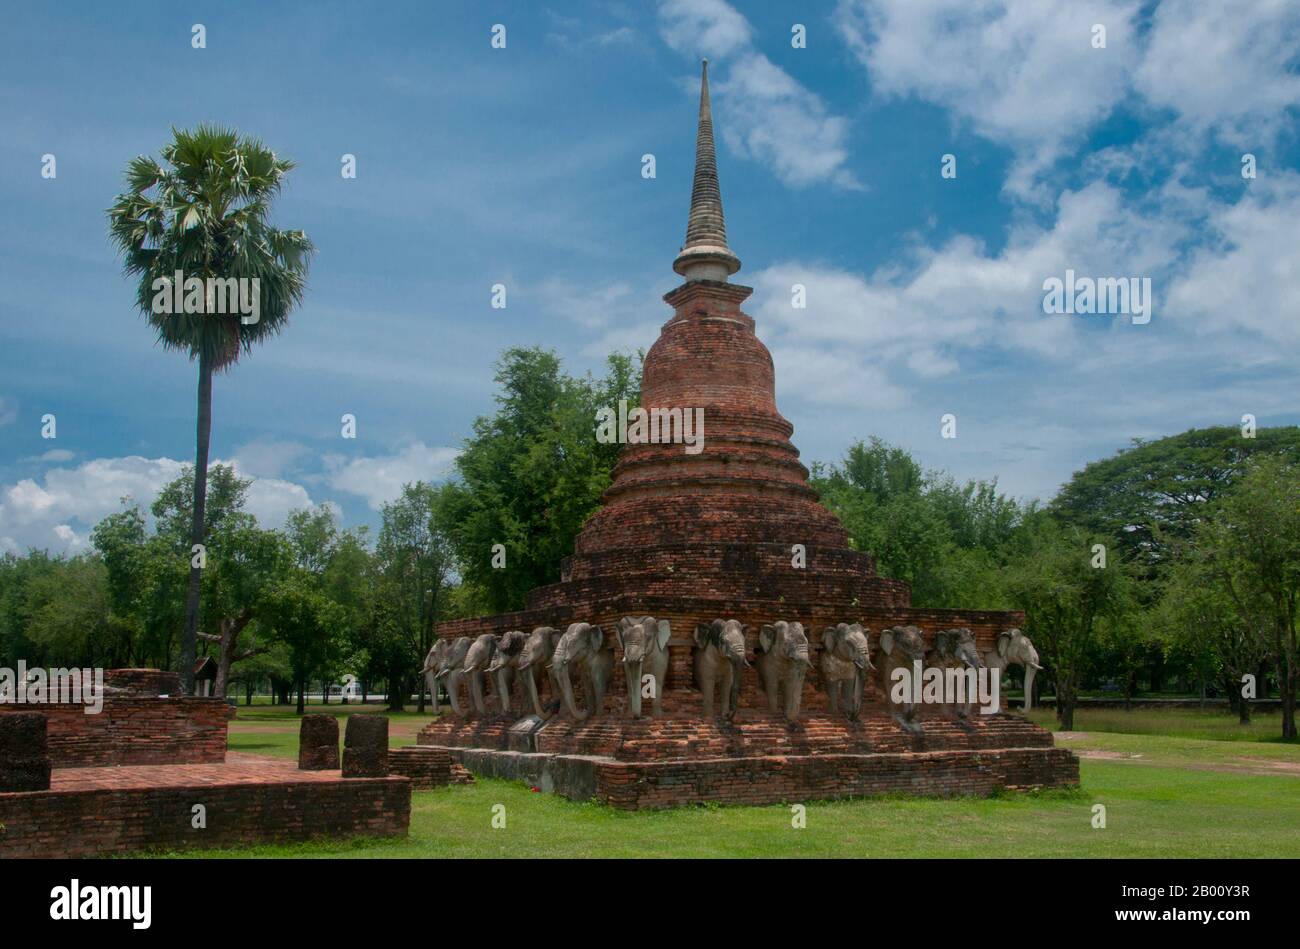 Thailand: Wat Sorasak, Sukhothai Historischer Park. Wat Sorasak wurde im frühen 15. Jahrhundert erbaut und ist bekannt für die 24 Elefanten, die die Basis des Sri Lanka-Stil Chedi umgeben. Sukhothai, was wörtlich "Dawn of Happiness" bedeutet, war die Hauptstadt des Sukhothai-Königreichs und wurde 1238 gegründet. Es war die Hauptstadt des thailändischen Reiches für etwa 140 Jahre. Stockfoto